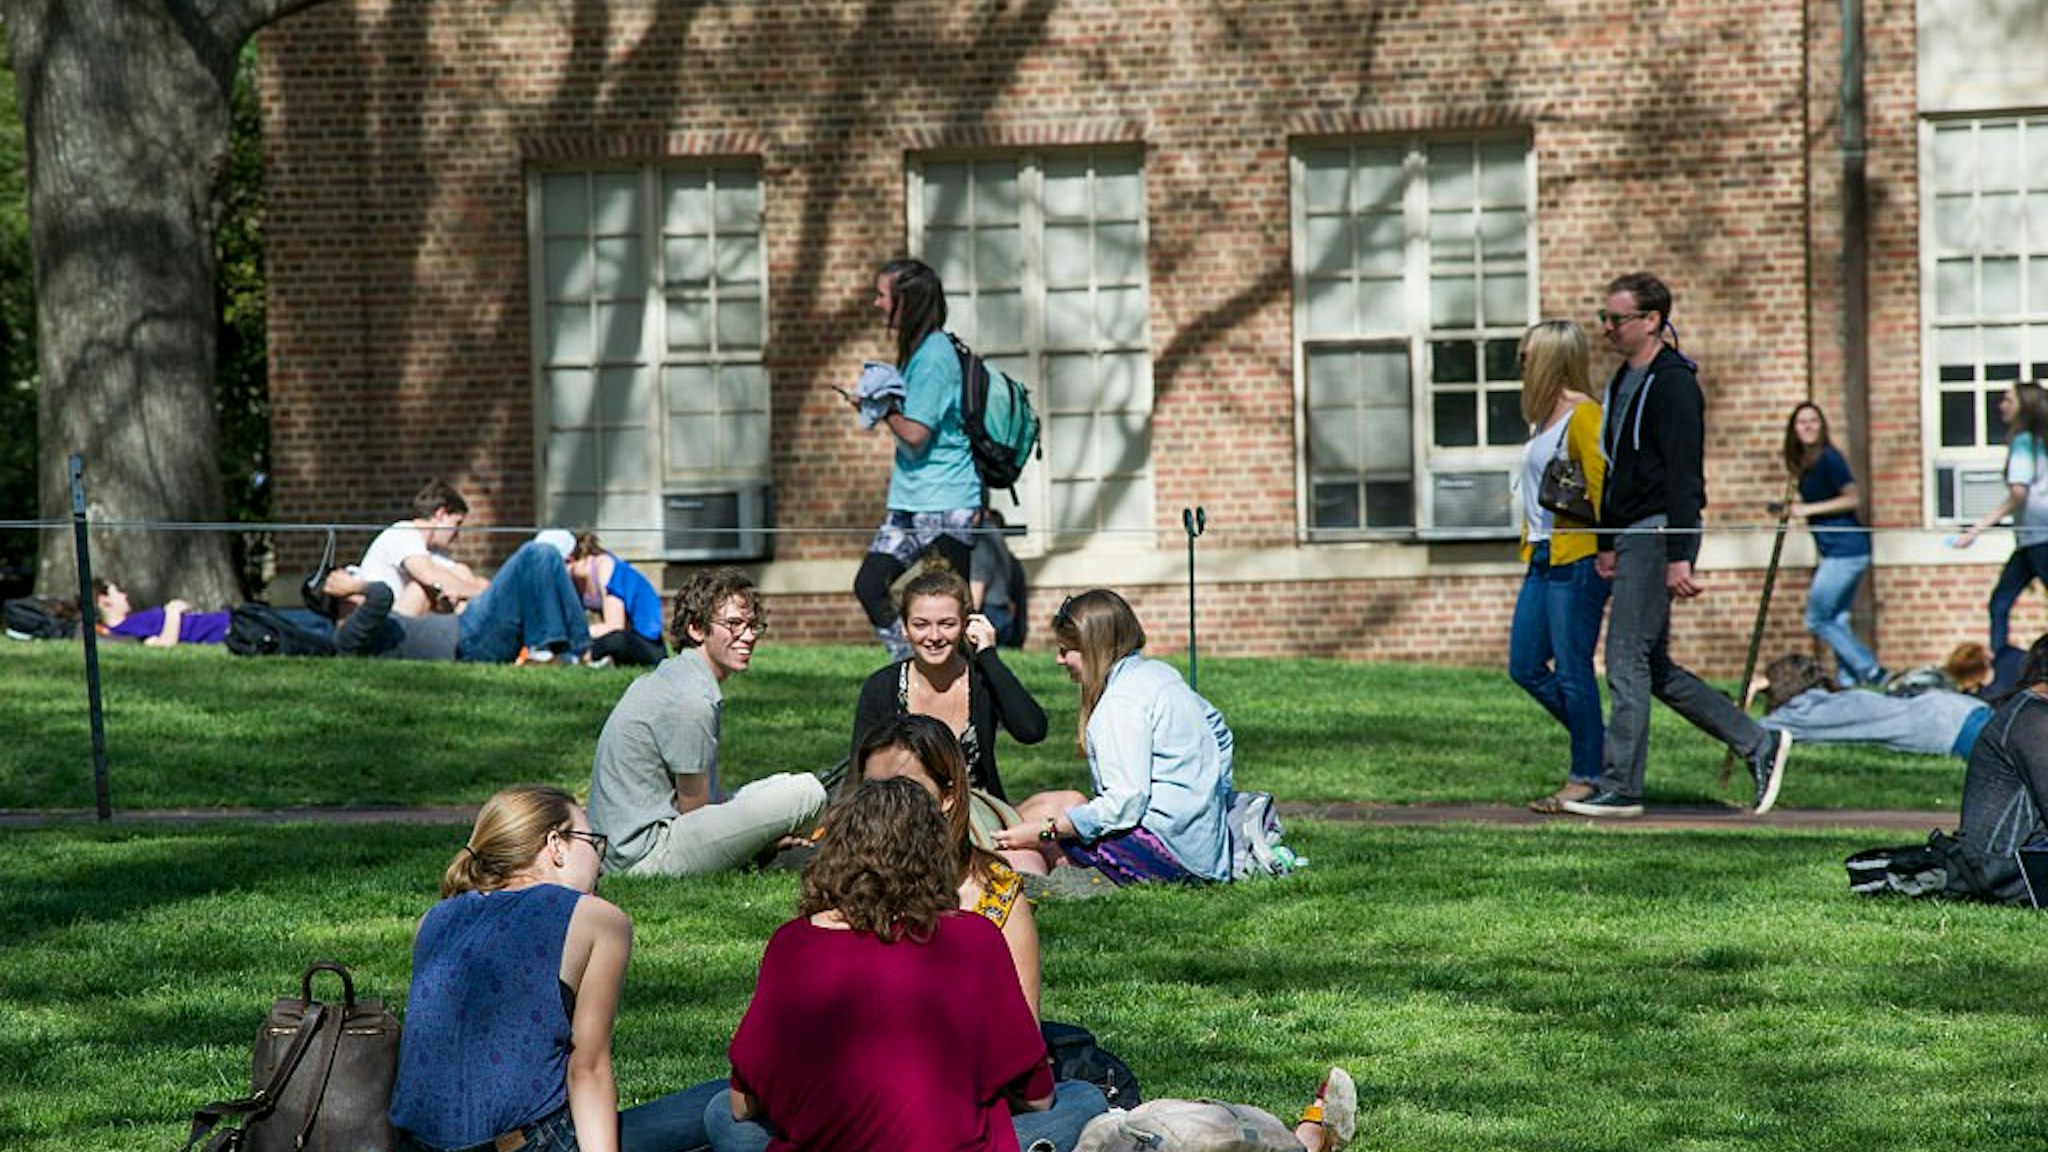 Students at the University of North Carolina.